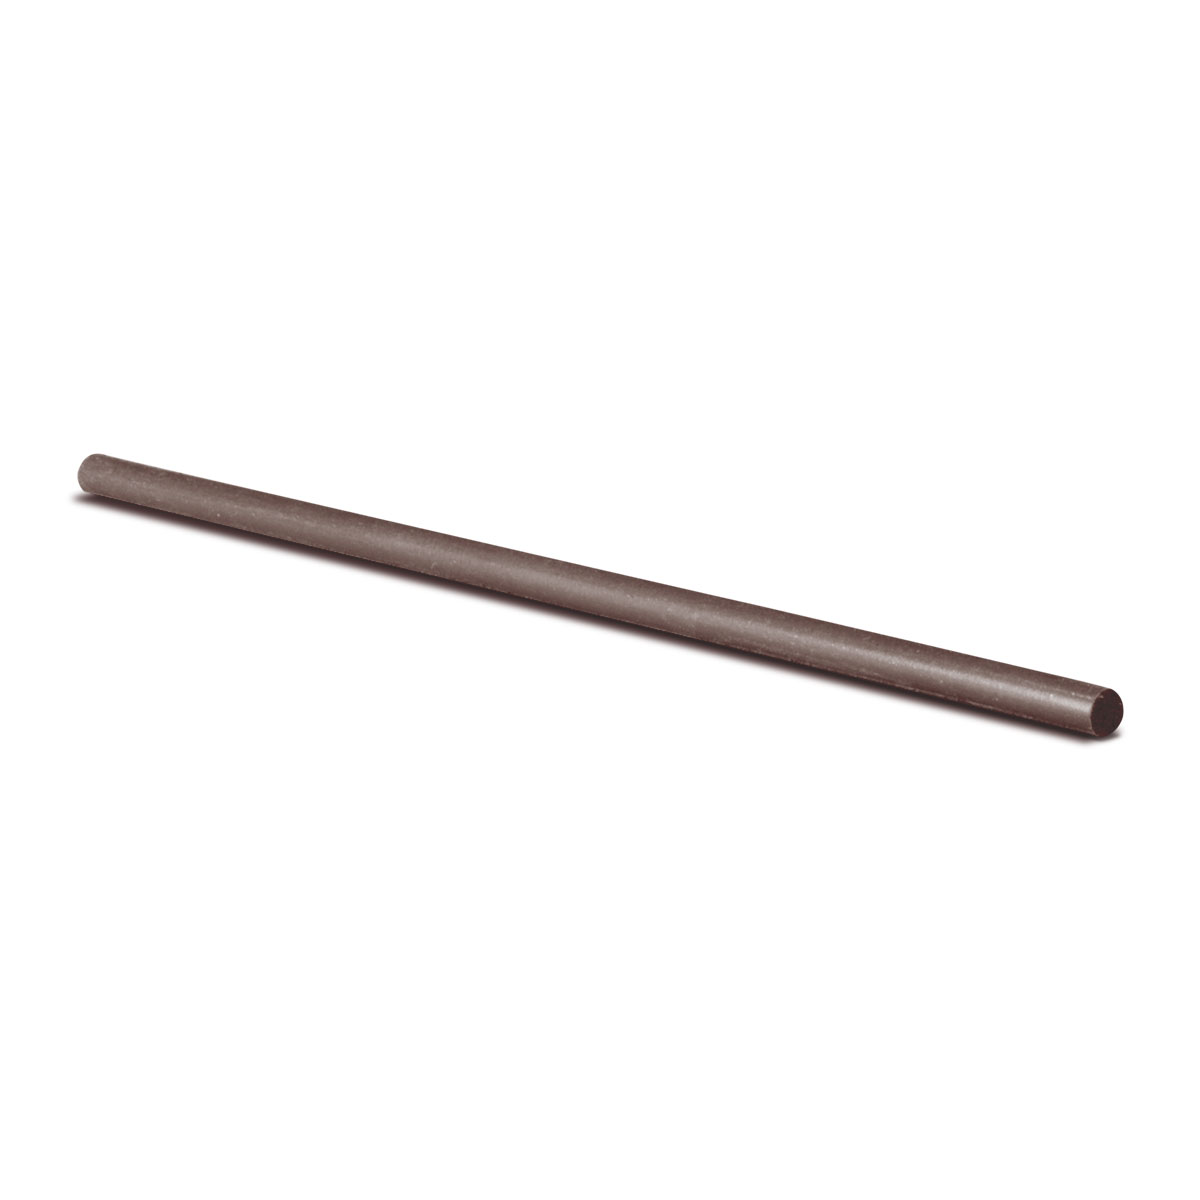 Cratex bâton de broyage, Ø 4,8 x 150 mm, Taille du grain 90, Rond, Brun foncé